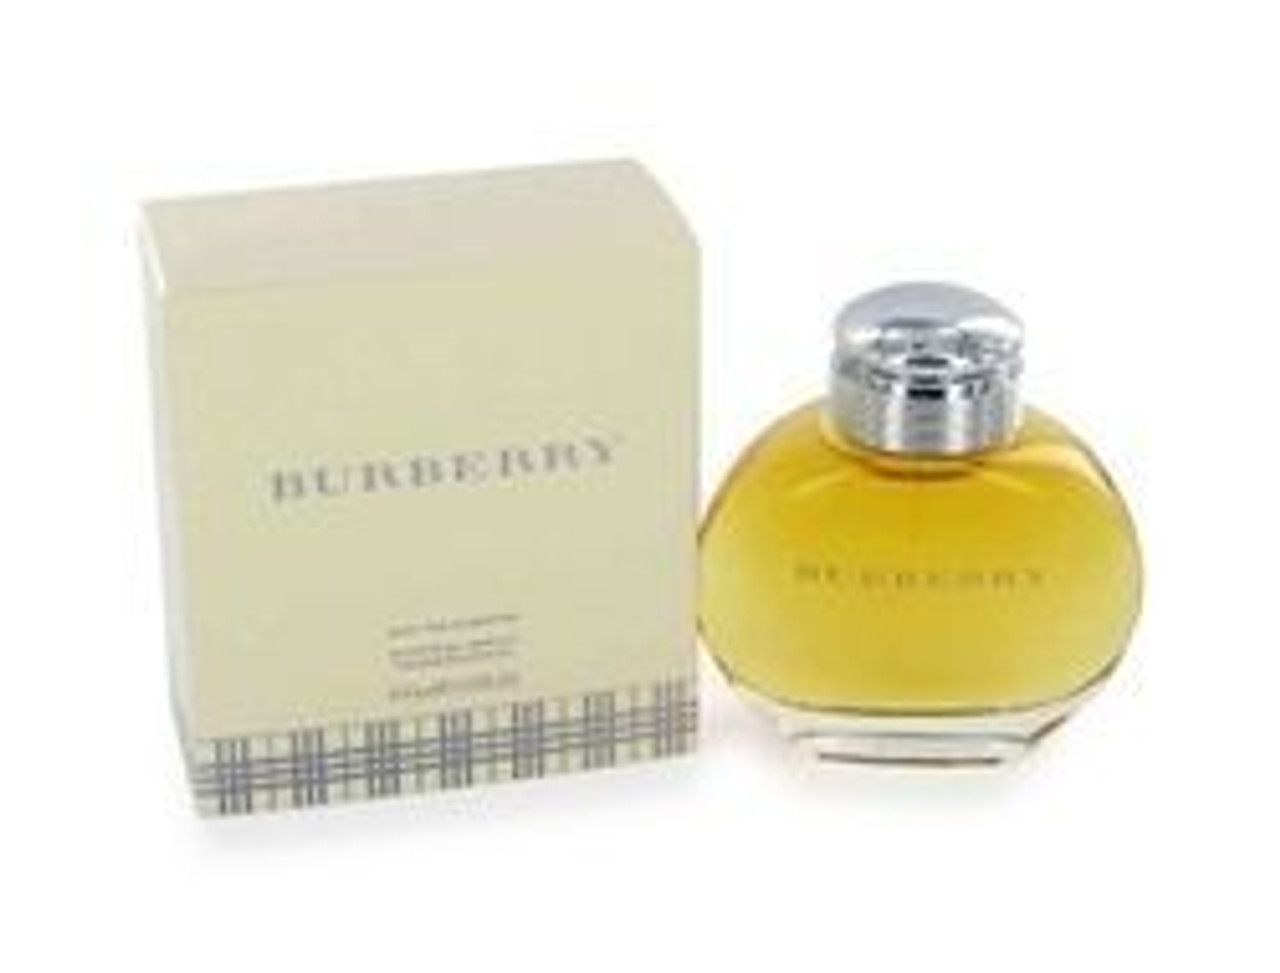 3.4oz Burberry De Parfum Women Spray Eau